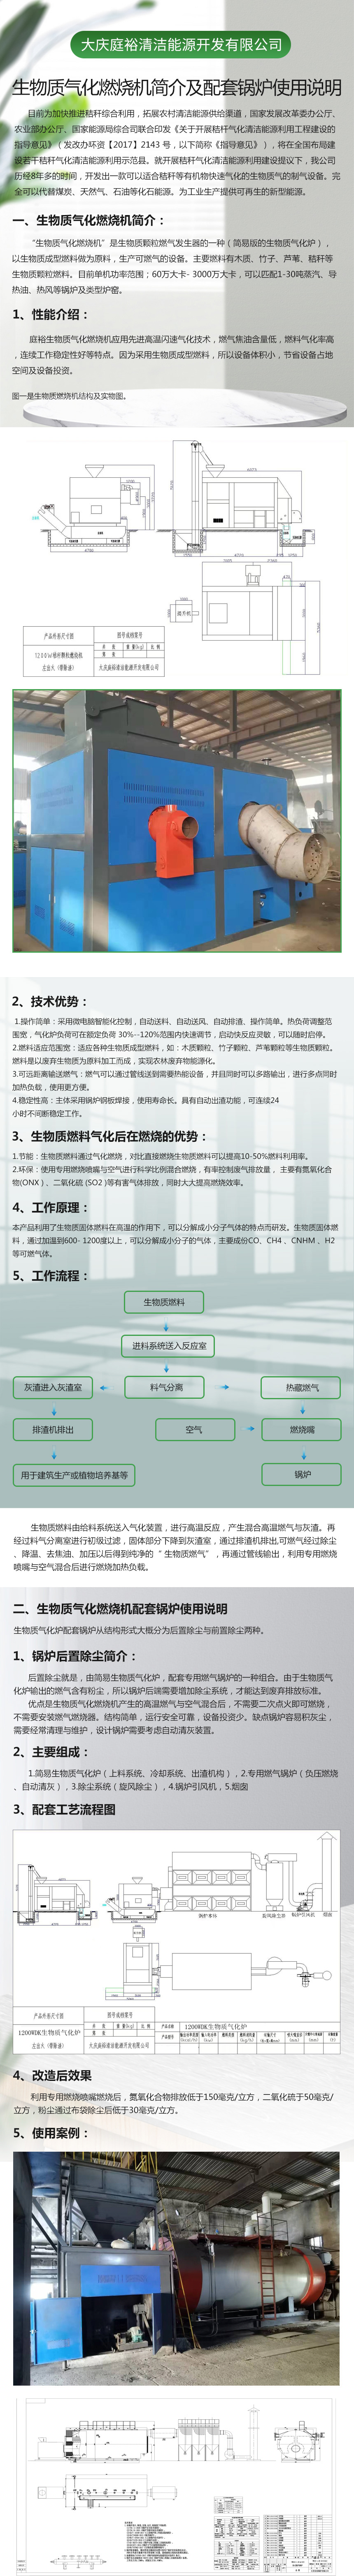 大庆庭裕生物质燃烧机配套锅炉使用说明.jpg